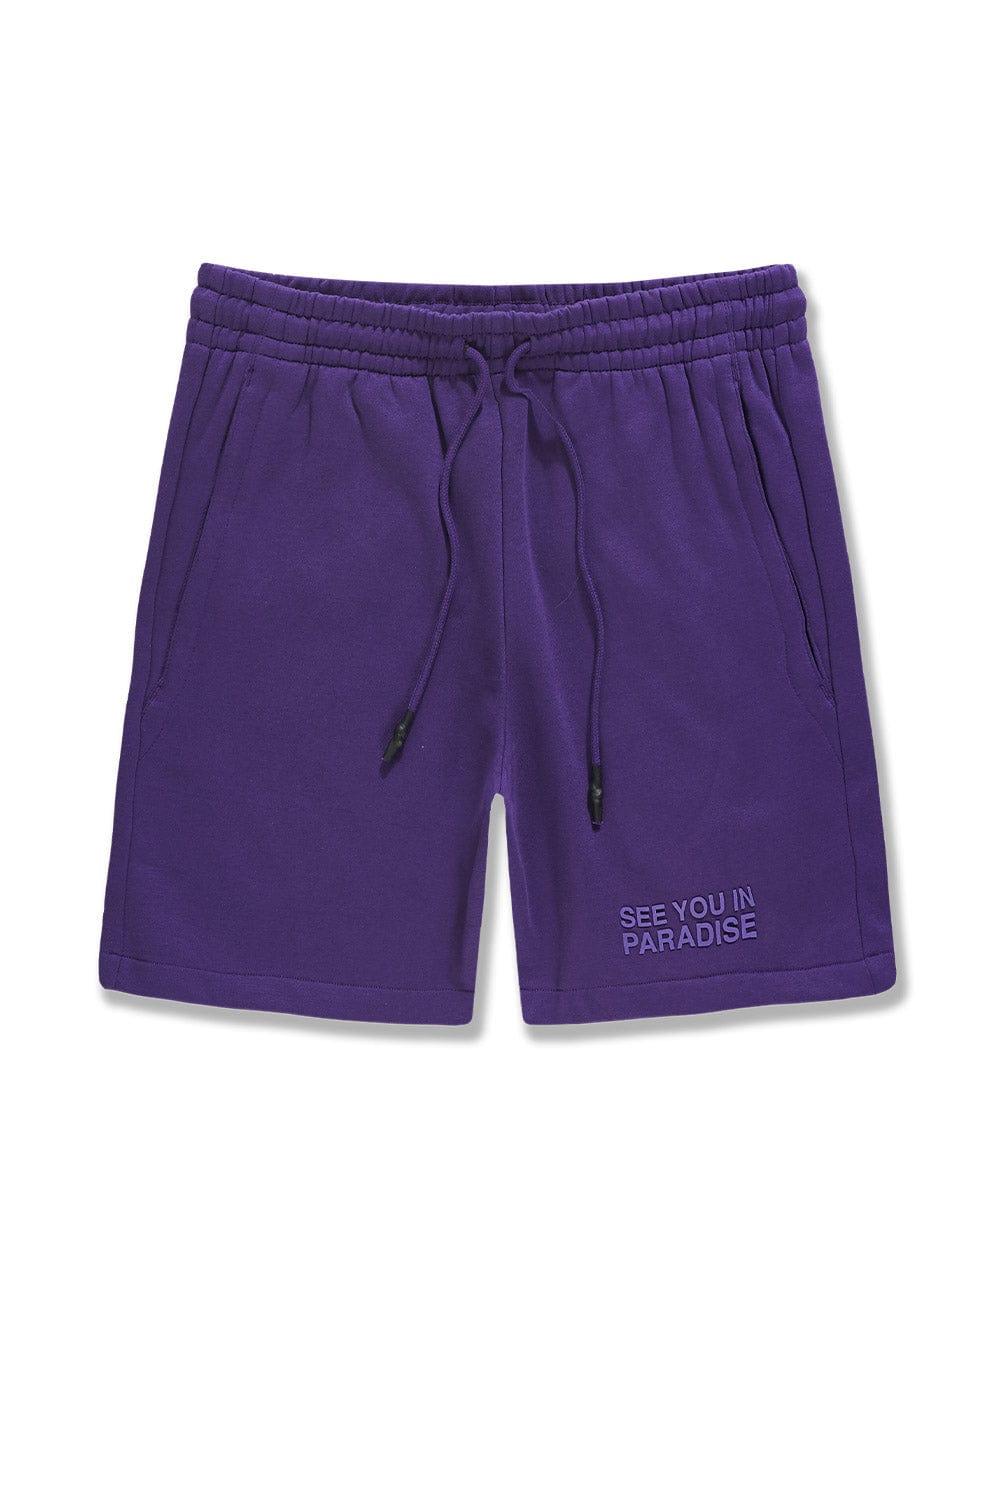 JC Big Men Big Men's Retro Paradise Tonal Shorts (Purple)